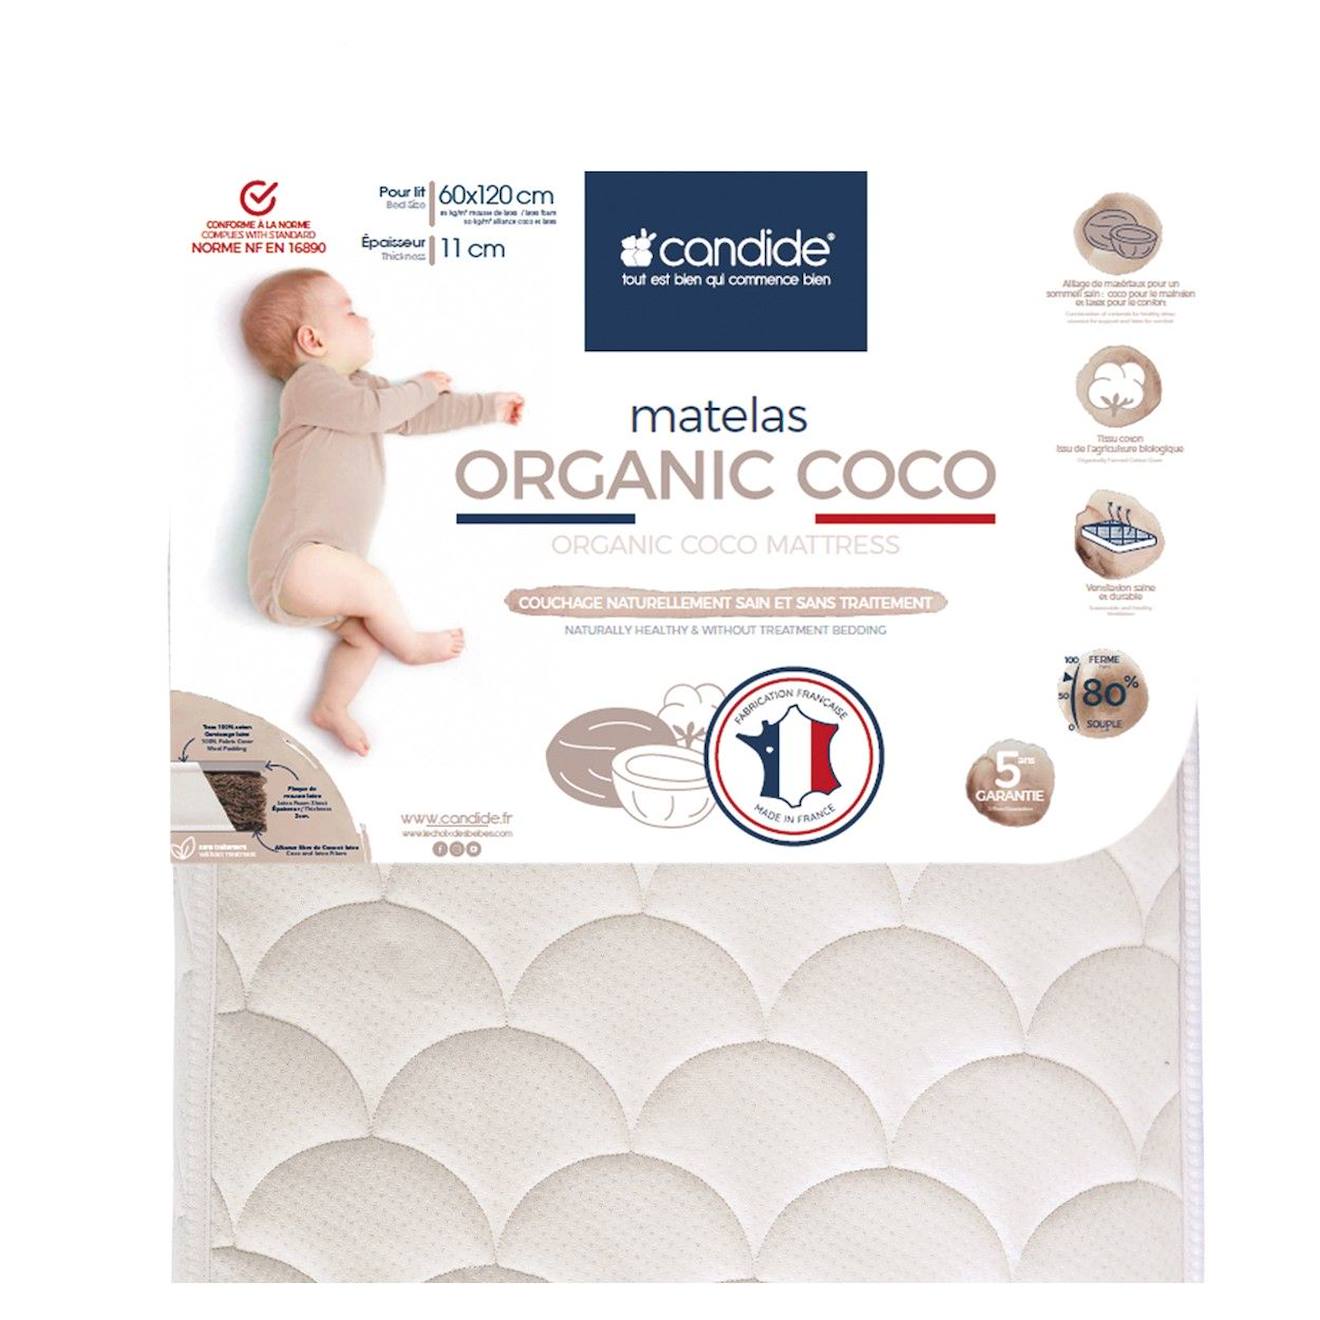 Matelas Bébé 70x140x11cm Organic Coco - Sans Traitement - Ferme - Tissu Coton Bio - Fabriqué En Fran